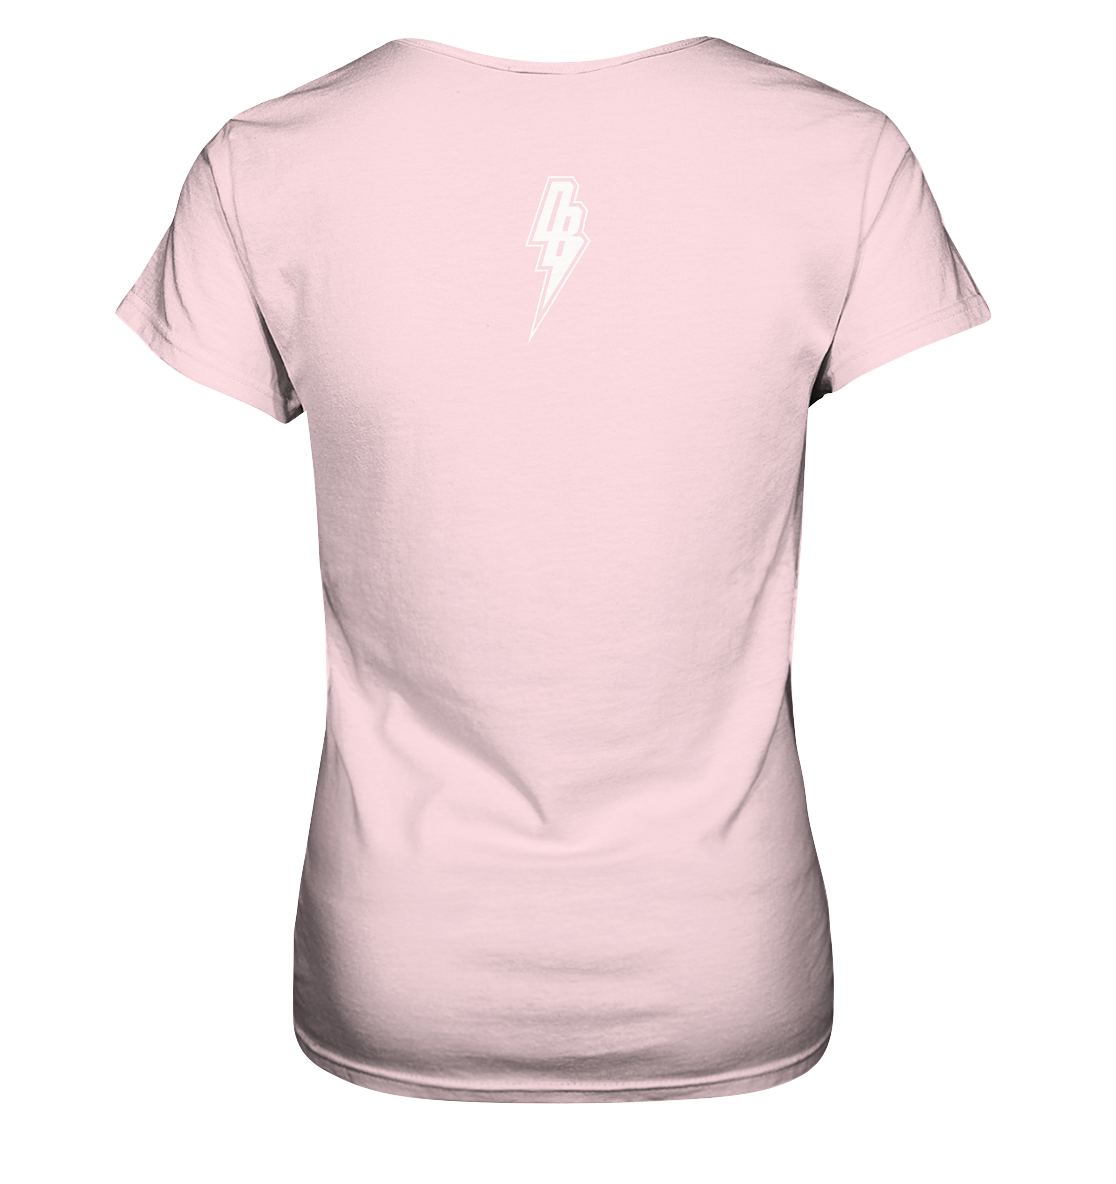 - Store Offical Girl Website DUST BOLT Logo & – Premium DUST | T-Shirt Ladies BOLT Shirt